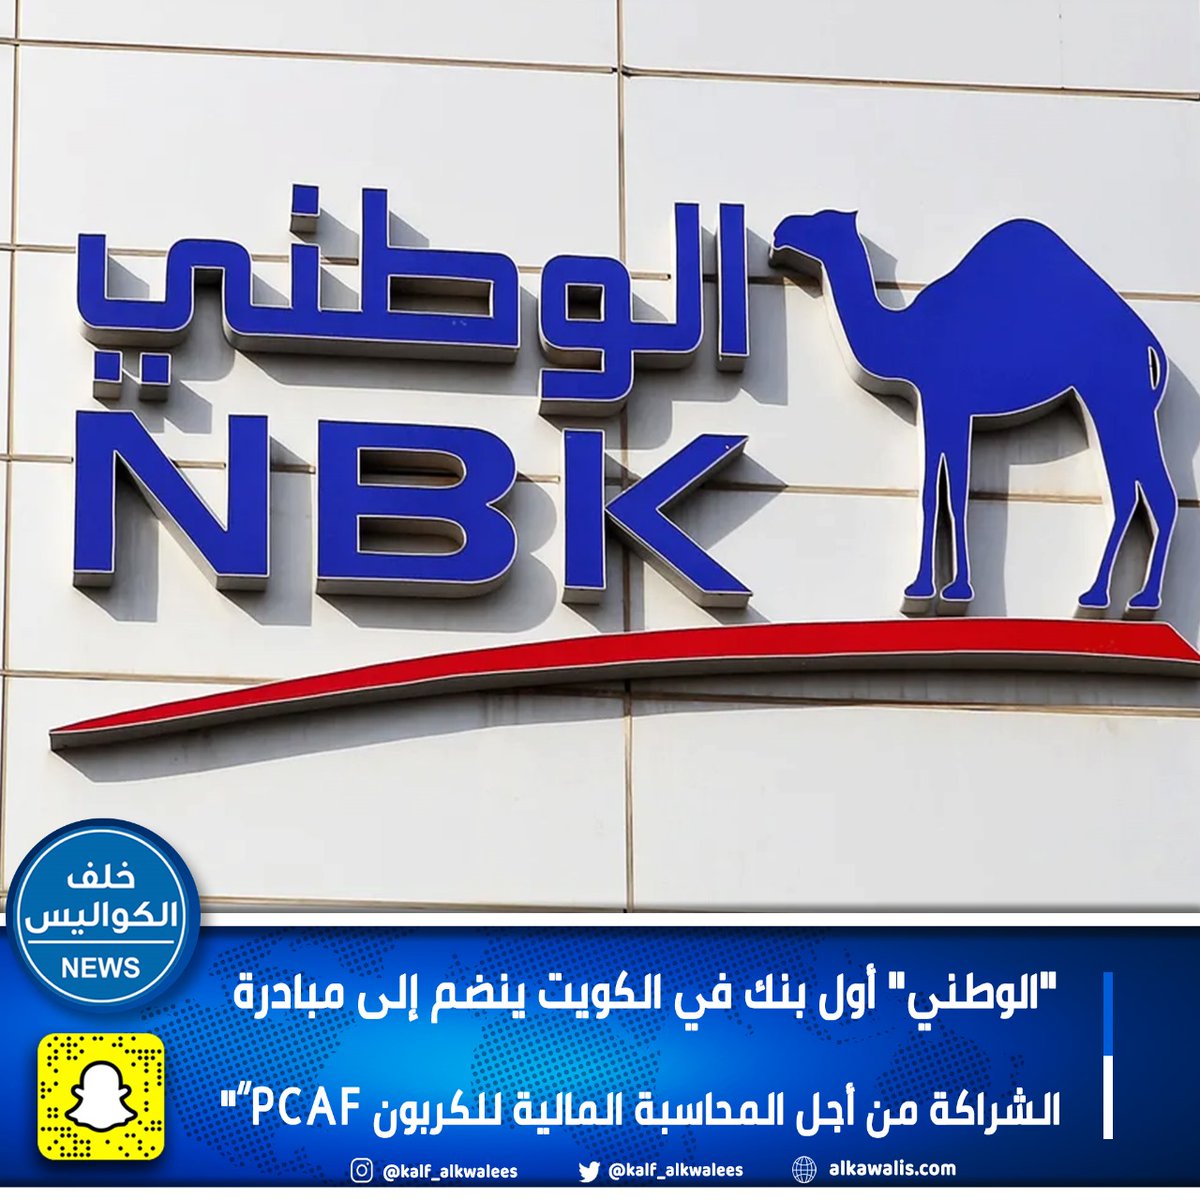 'الوطني' أول بنك في الكويت ينضم إلى مبادرة الشراكة من أجل المحاسبة المالية للكربون PCAF”'